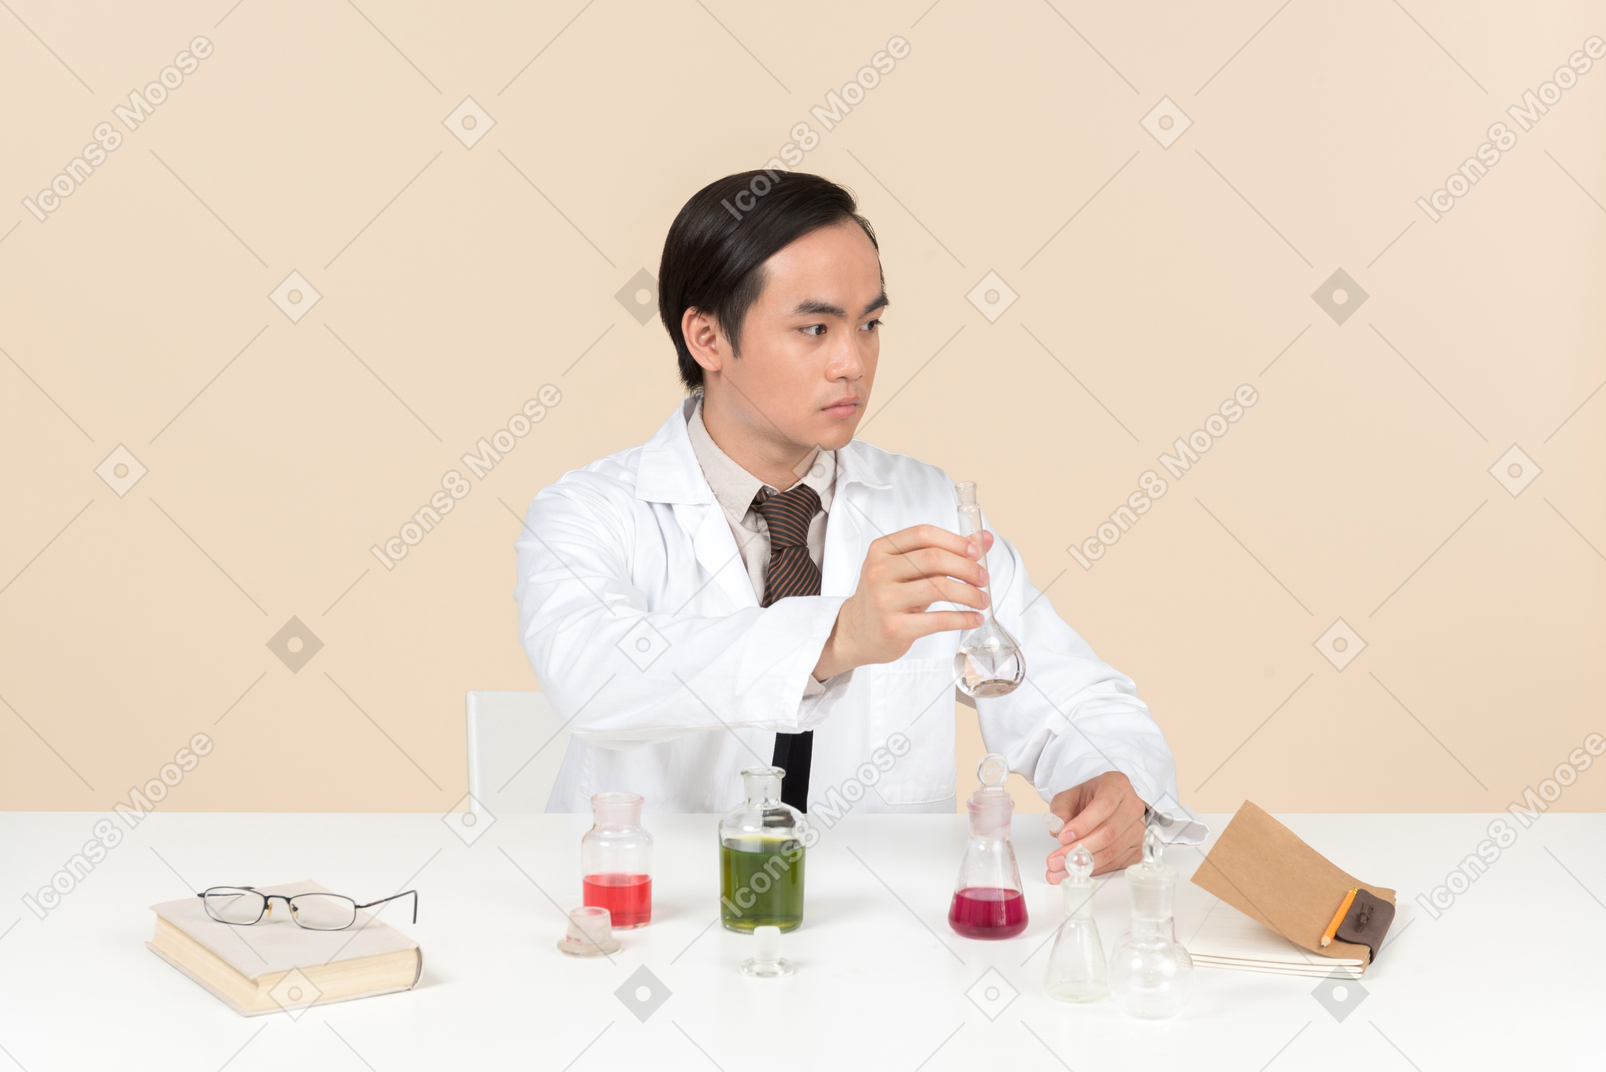 Ein asiatischer wissenschaftler in einem weißen kittel, der an einem chemischen experiment arbeitet